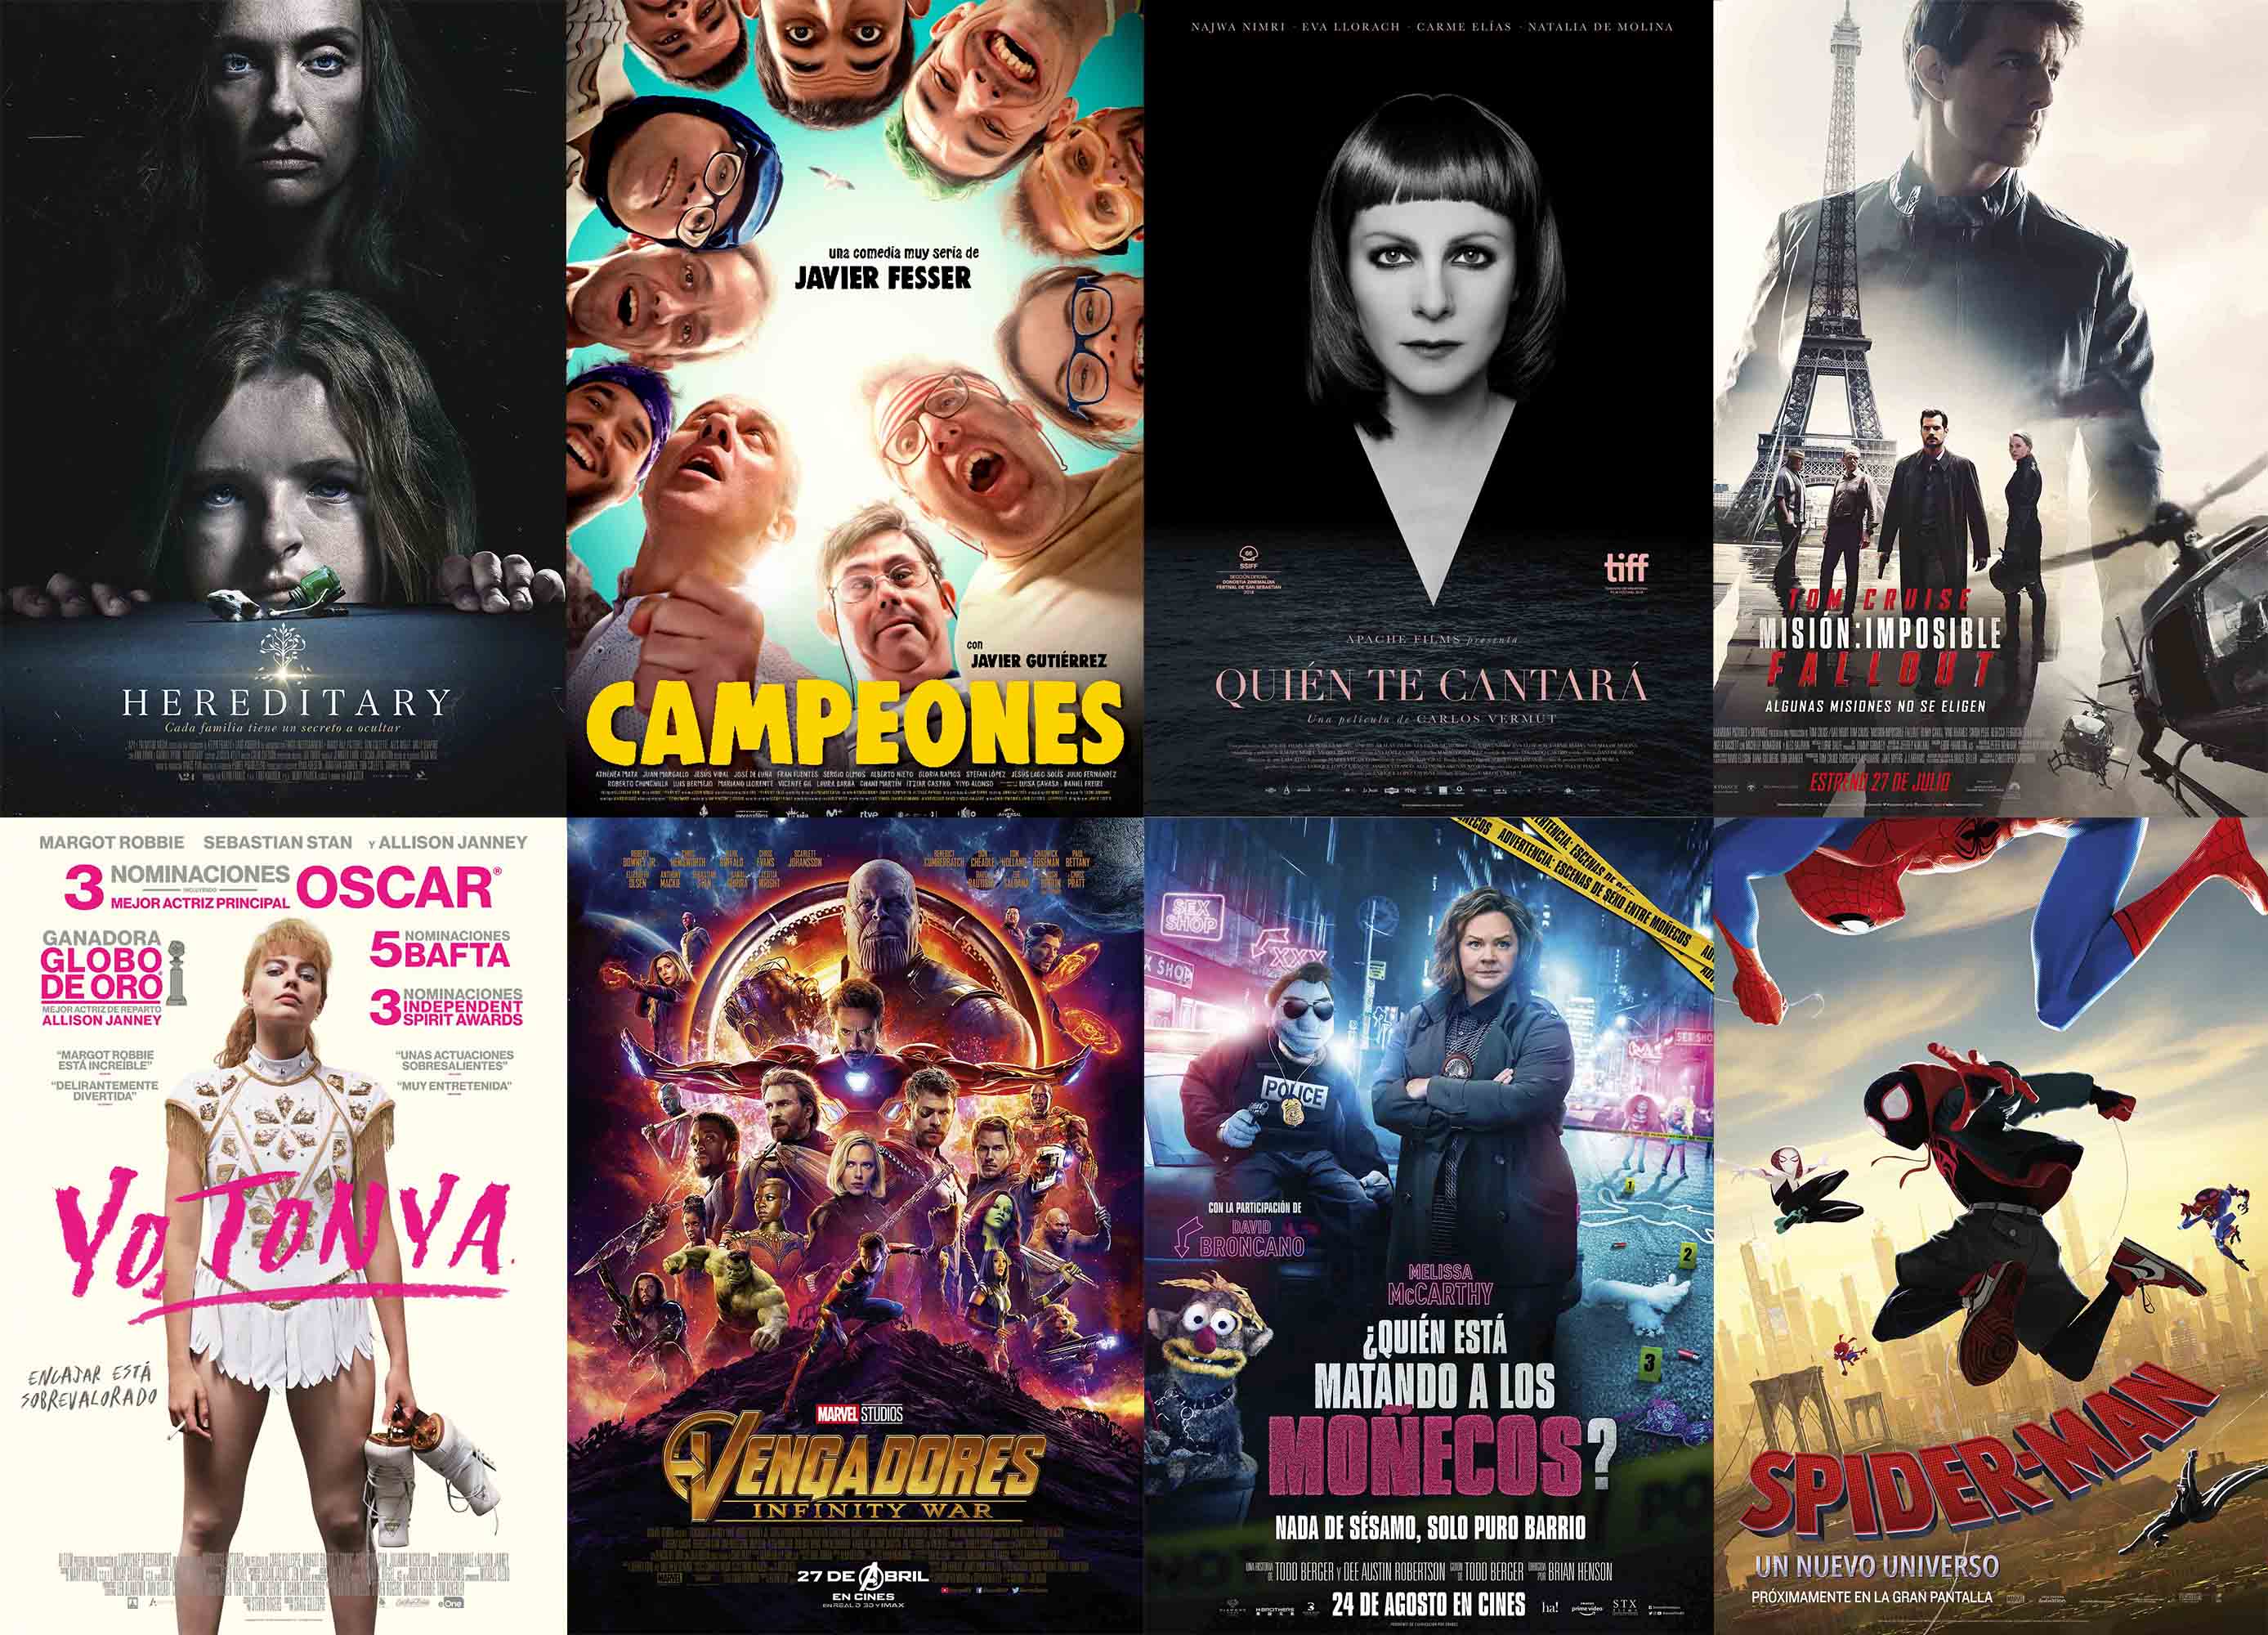 Lo que más nos ha gustado del cine de 2018 por categorías